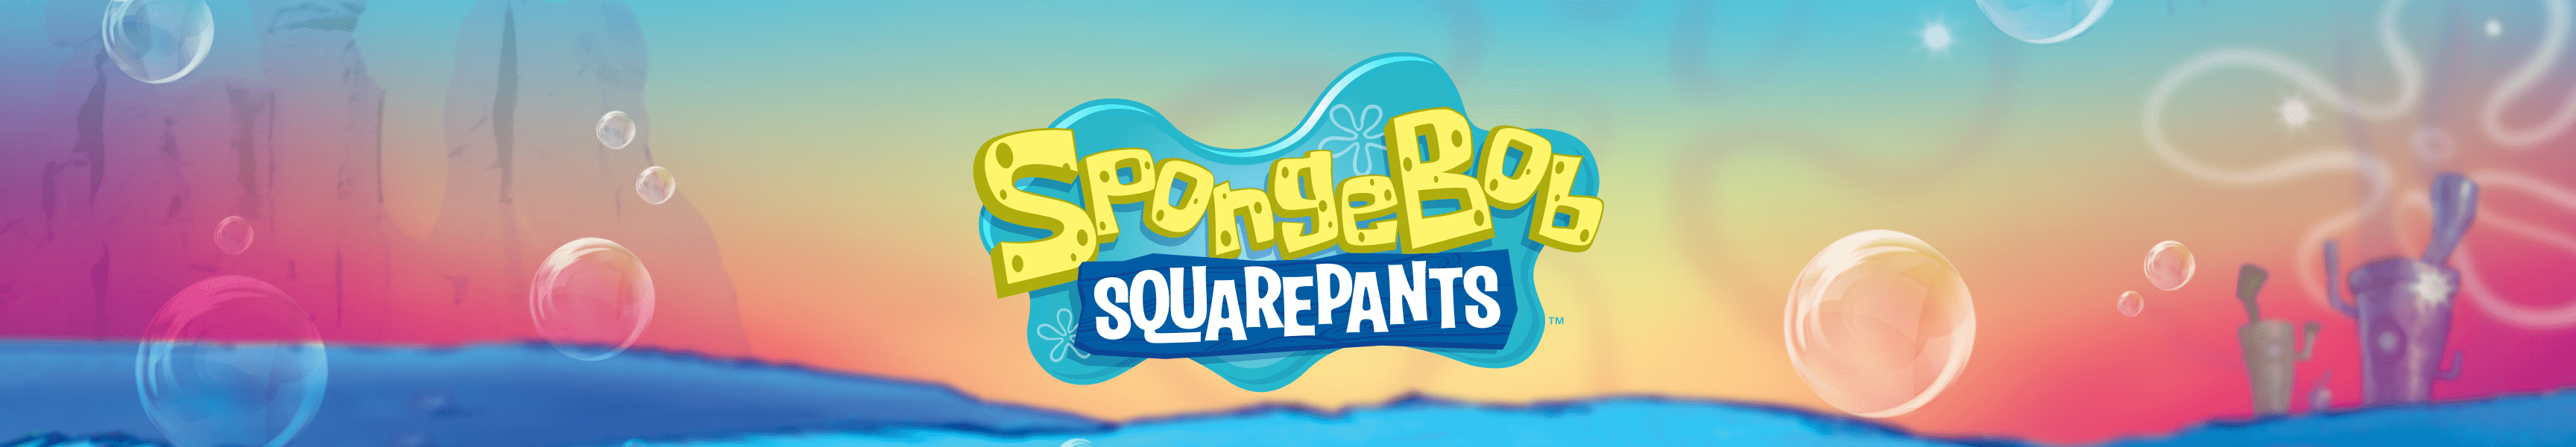 SpongeBob SquarePants Meme